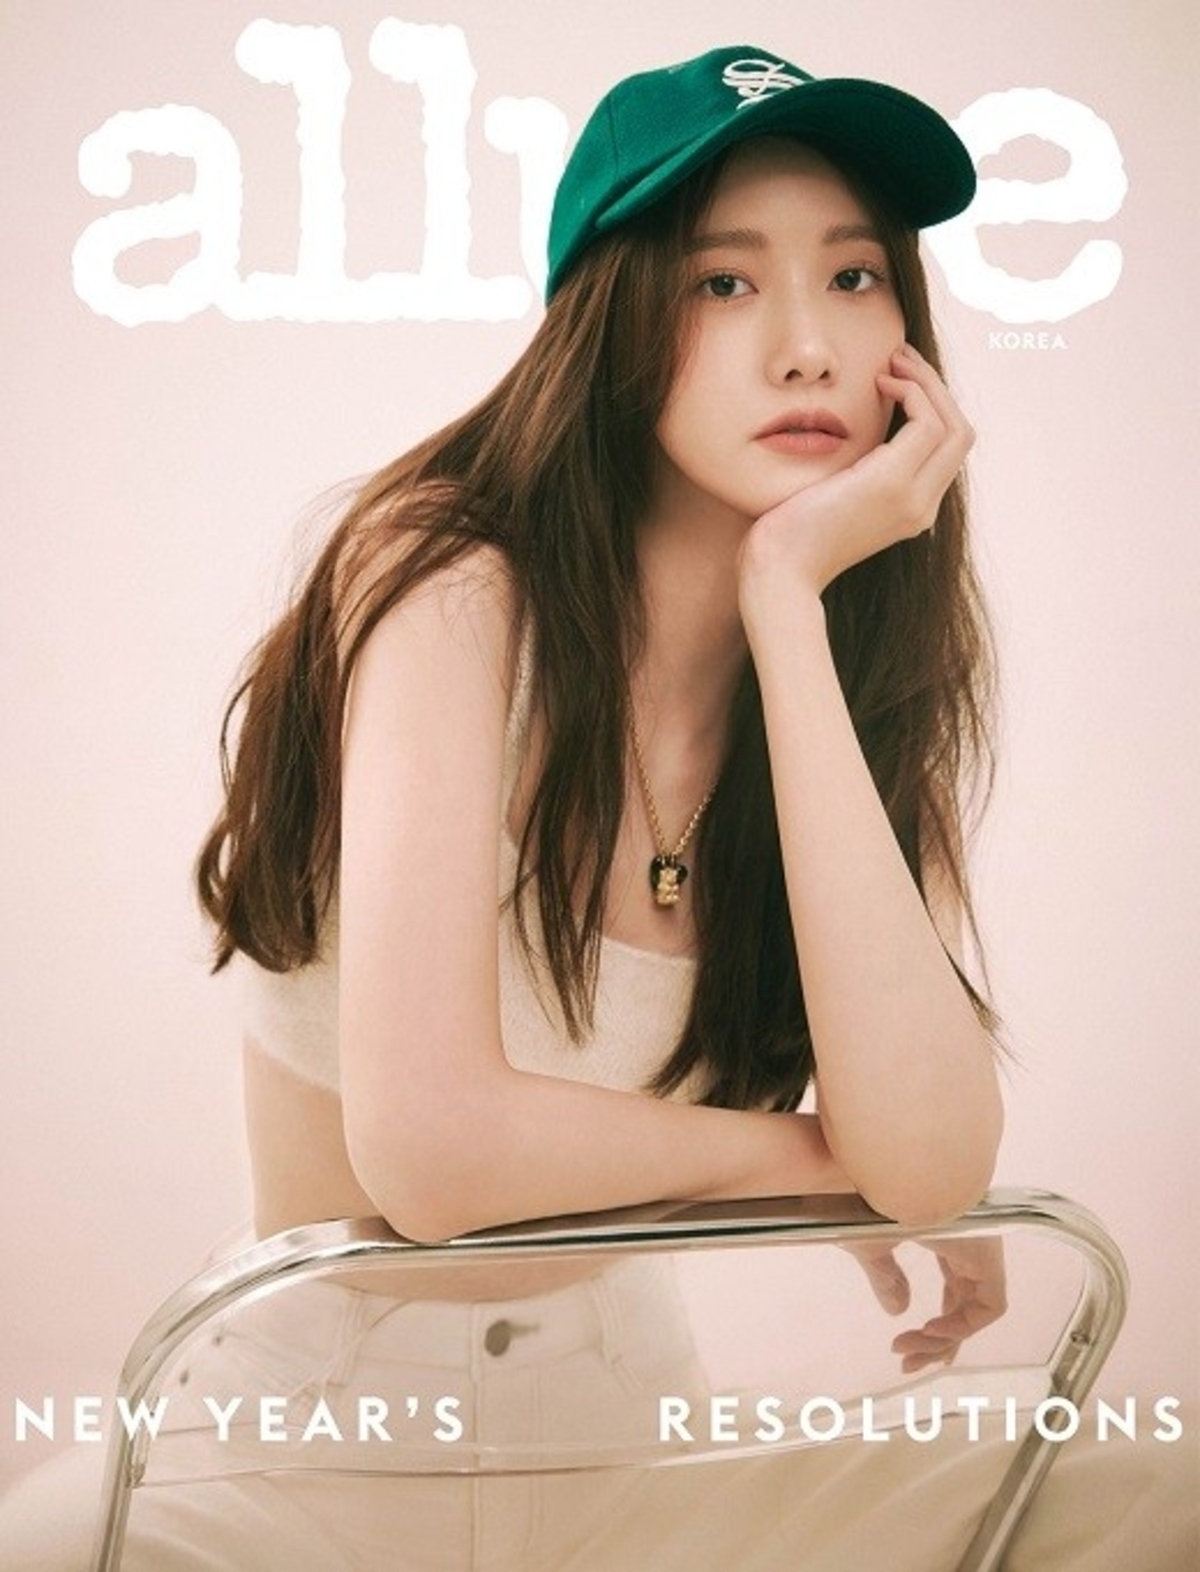 林允儿被选为时尚杂志《allure KOREA》1月封面模 《新年快乐》相关采访